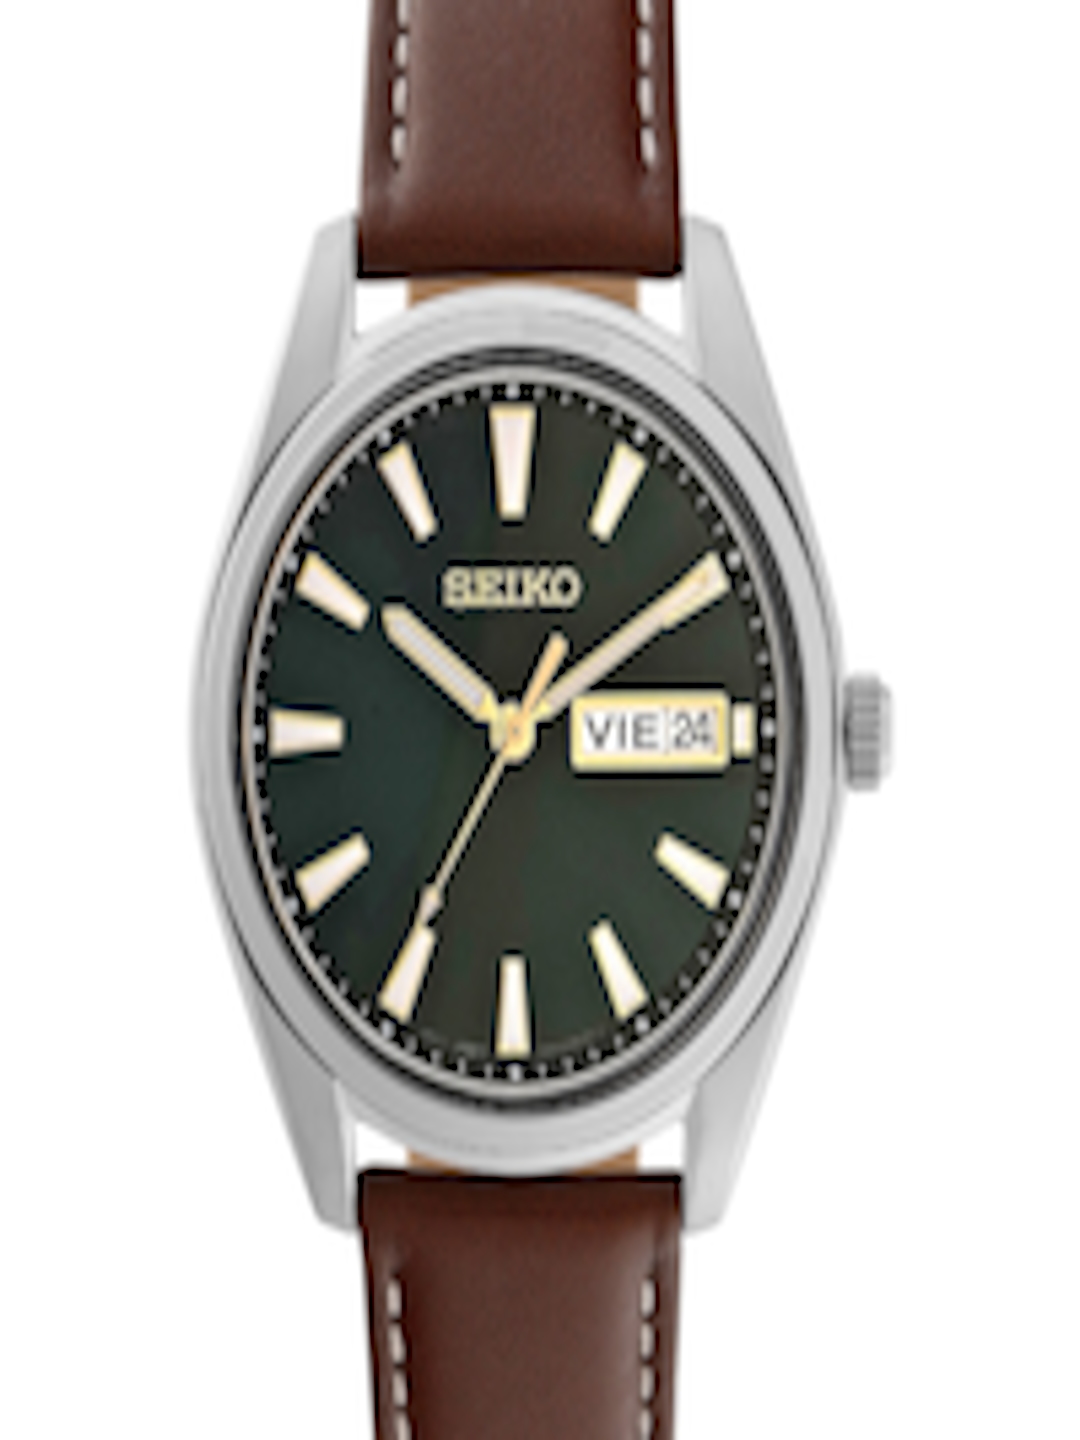 Buy SEIKO Men Dial & Brown Leather Straps Analogue Watch SAMASUR449P1 ...